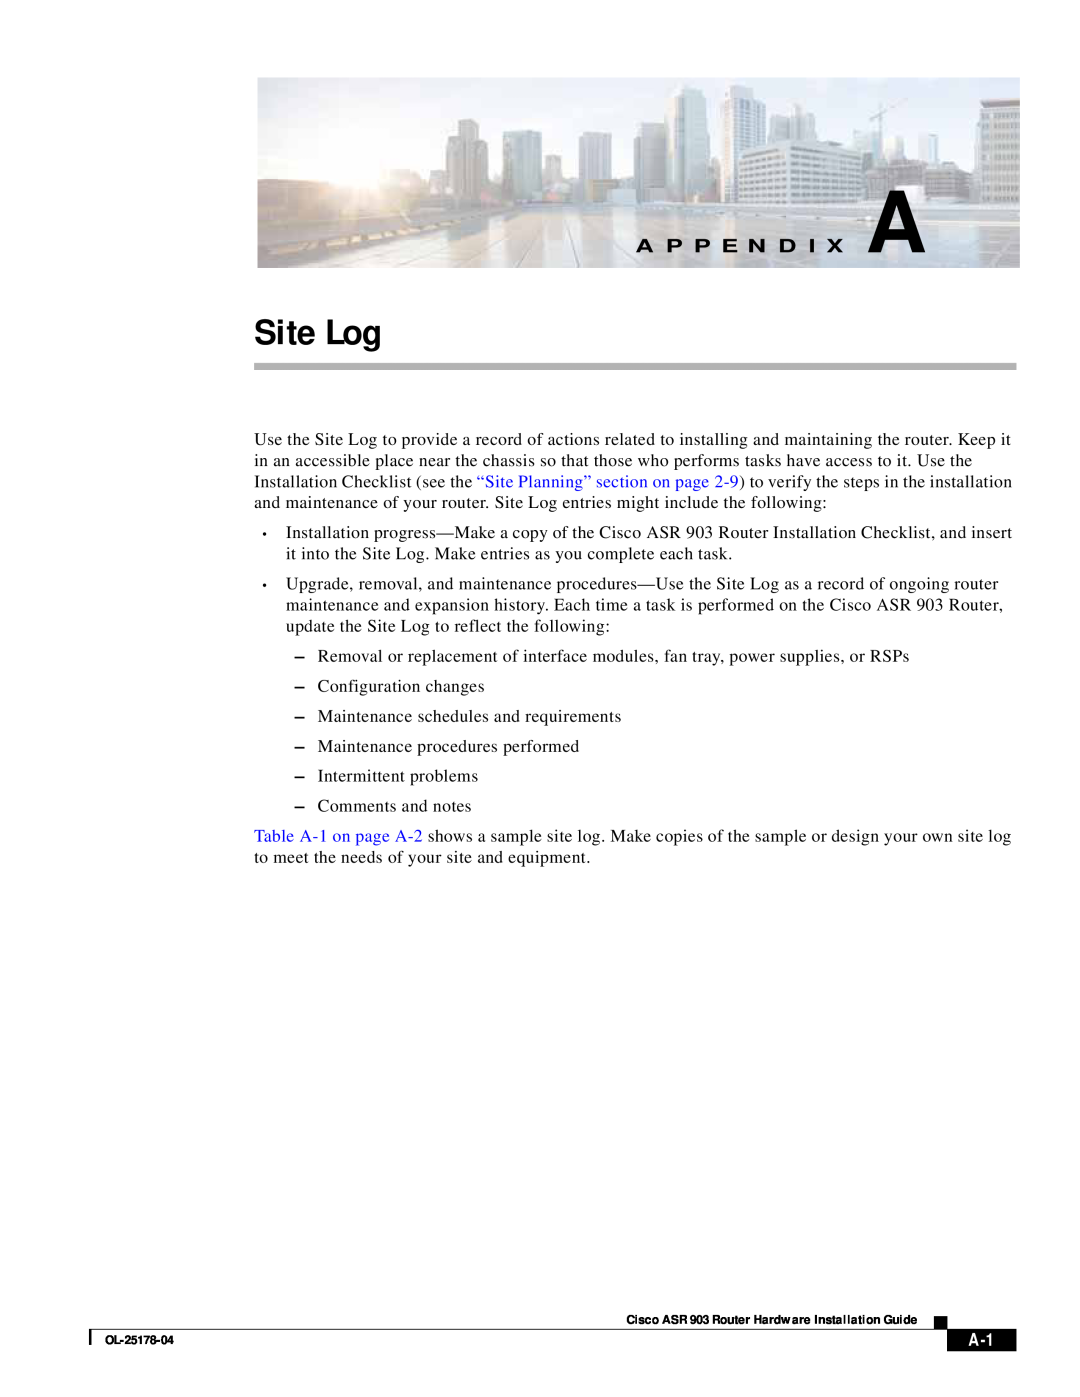 Cisco Systems ASR 903 manual Site Log, A P P E N D I X A 